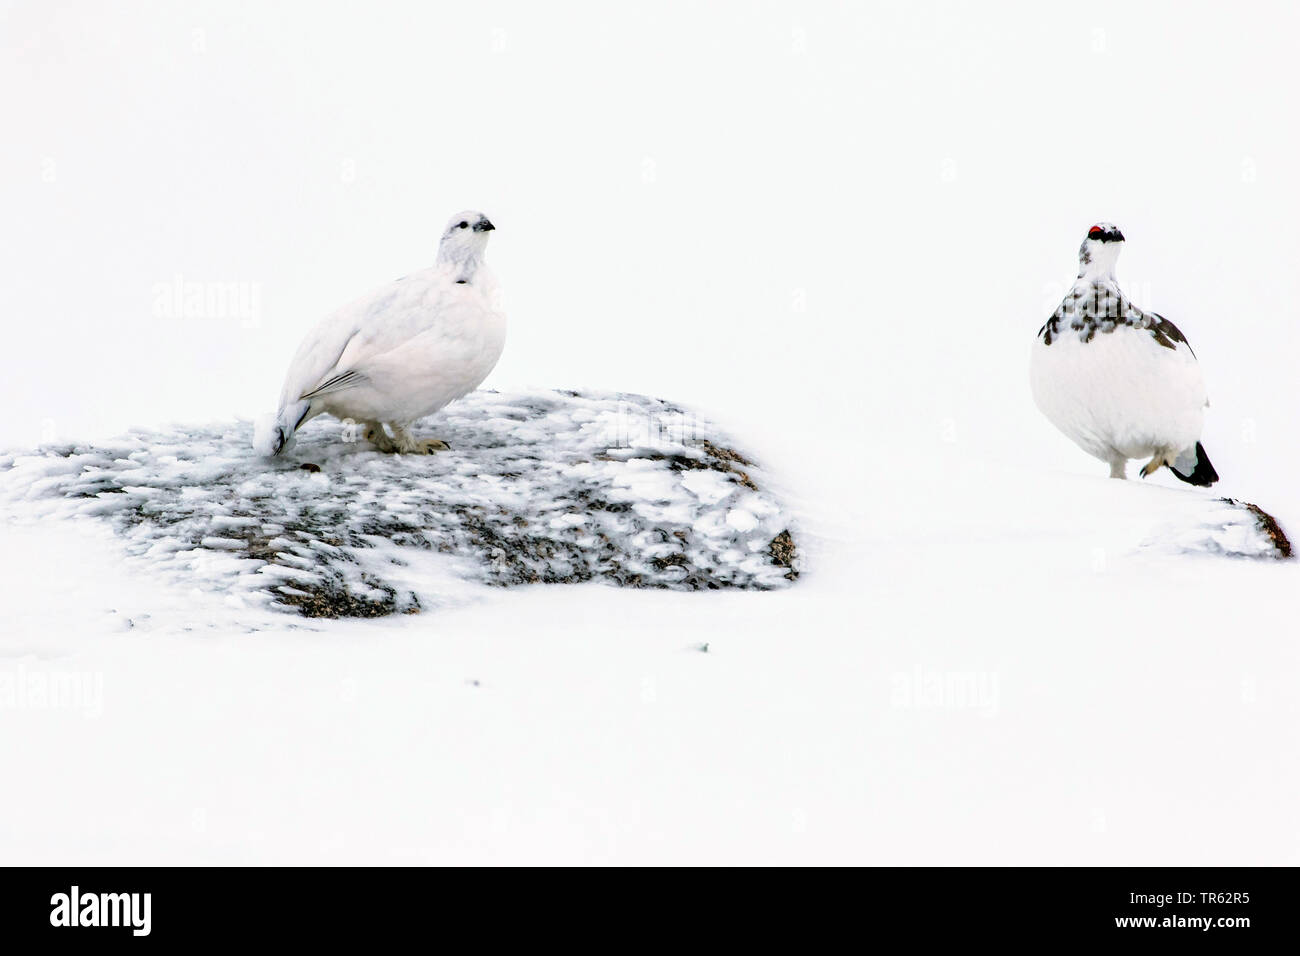 Le lagopède alpin, le poulet Neige (Lagopus mutus), Comité permanent sur les paysages enneigés en rock, Royaume-Uni, Ecosse, Avimore Banque D'Images